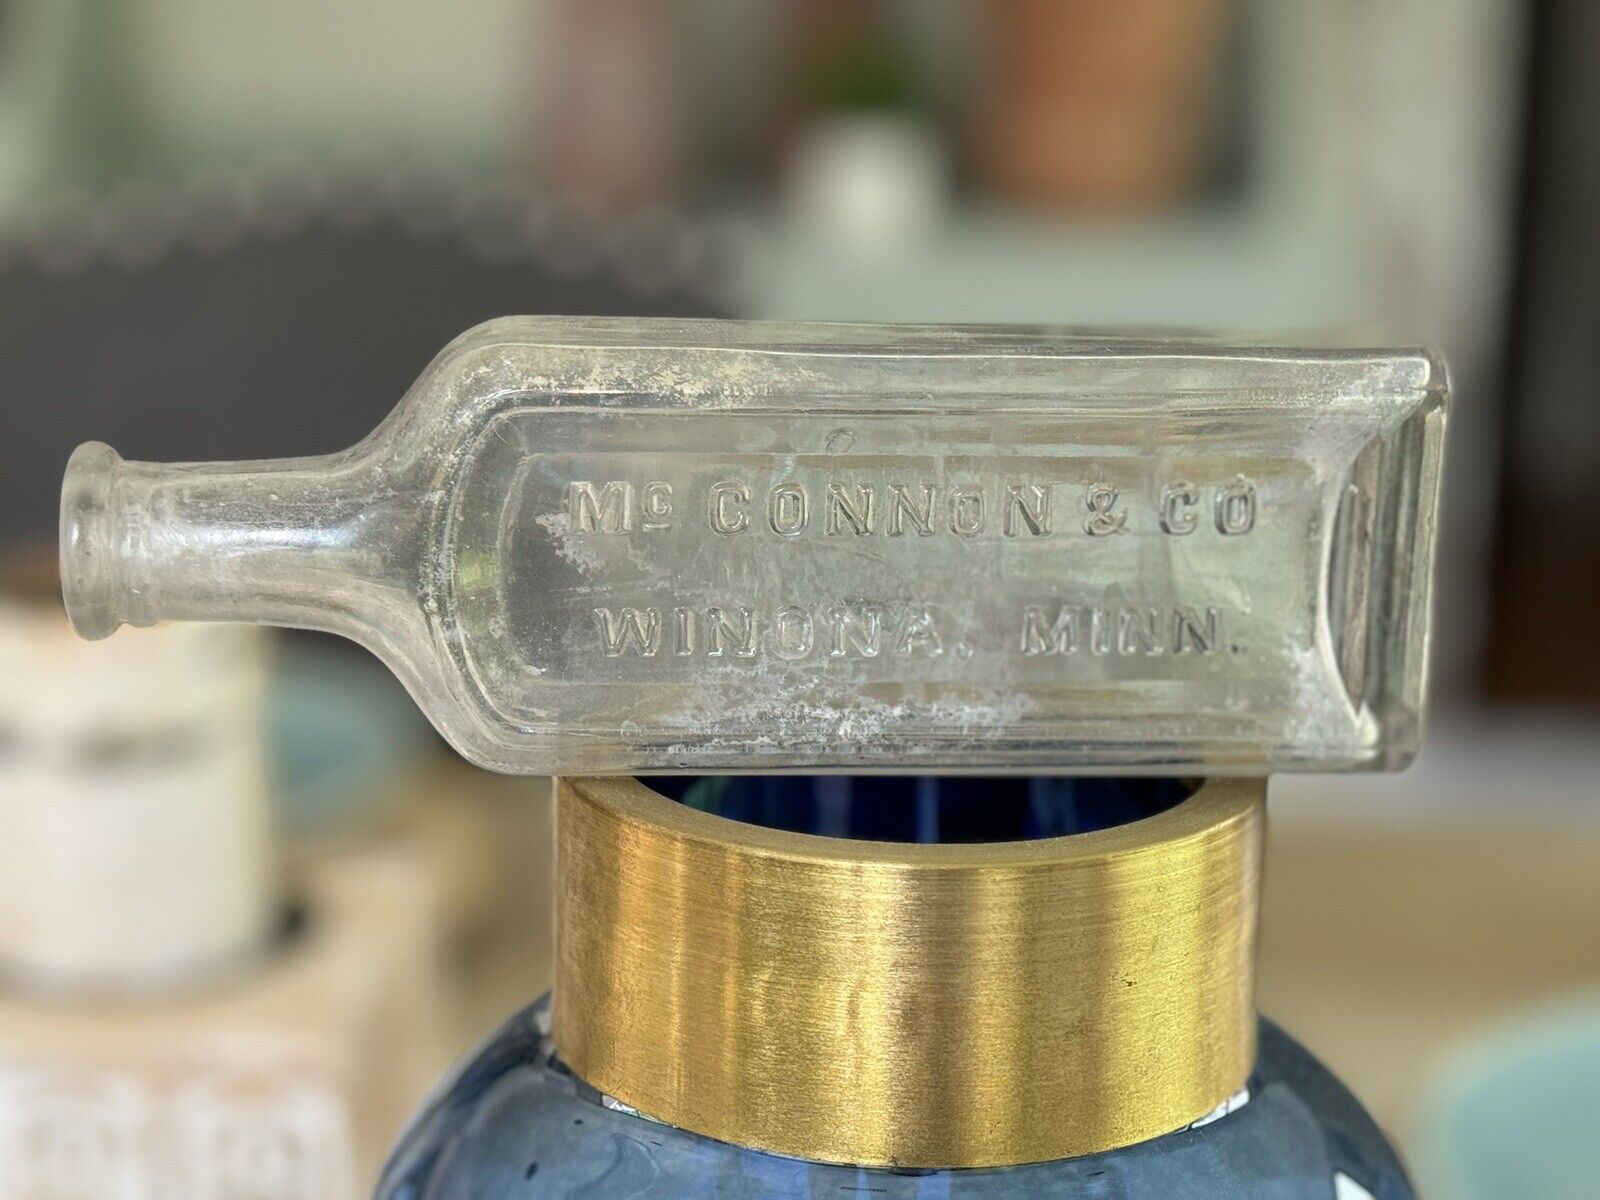 MC CONNON & CO WINNONA MINN Embossed Medicine Bottle 1880s